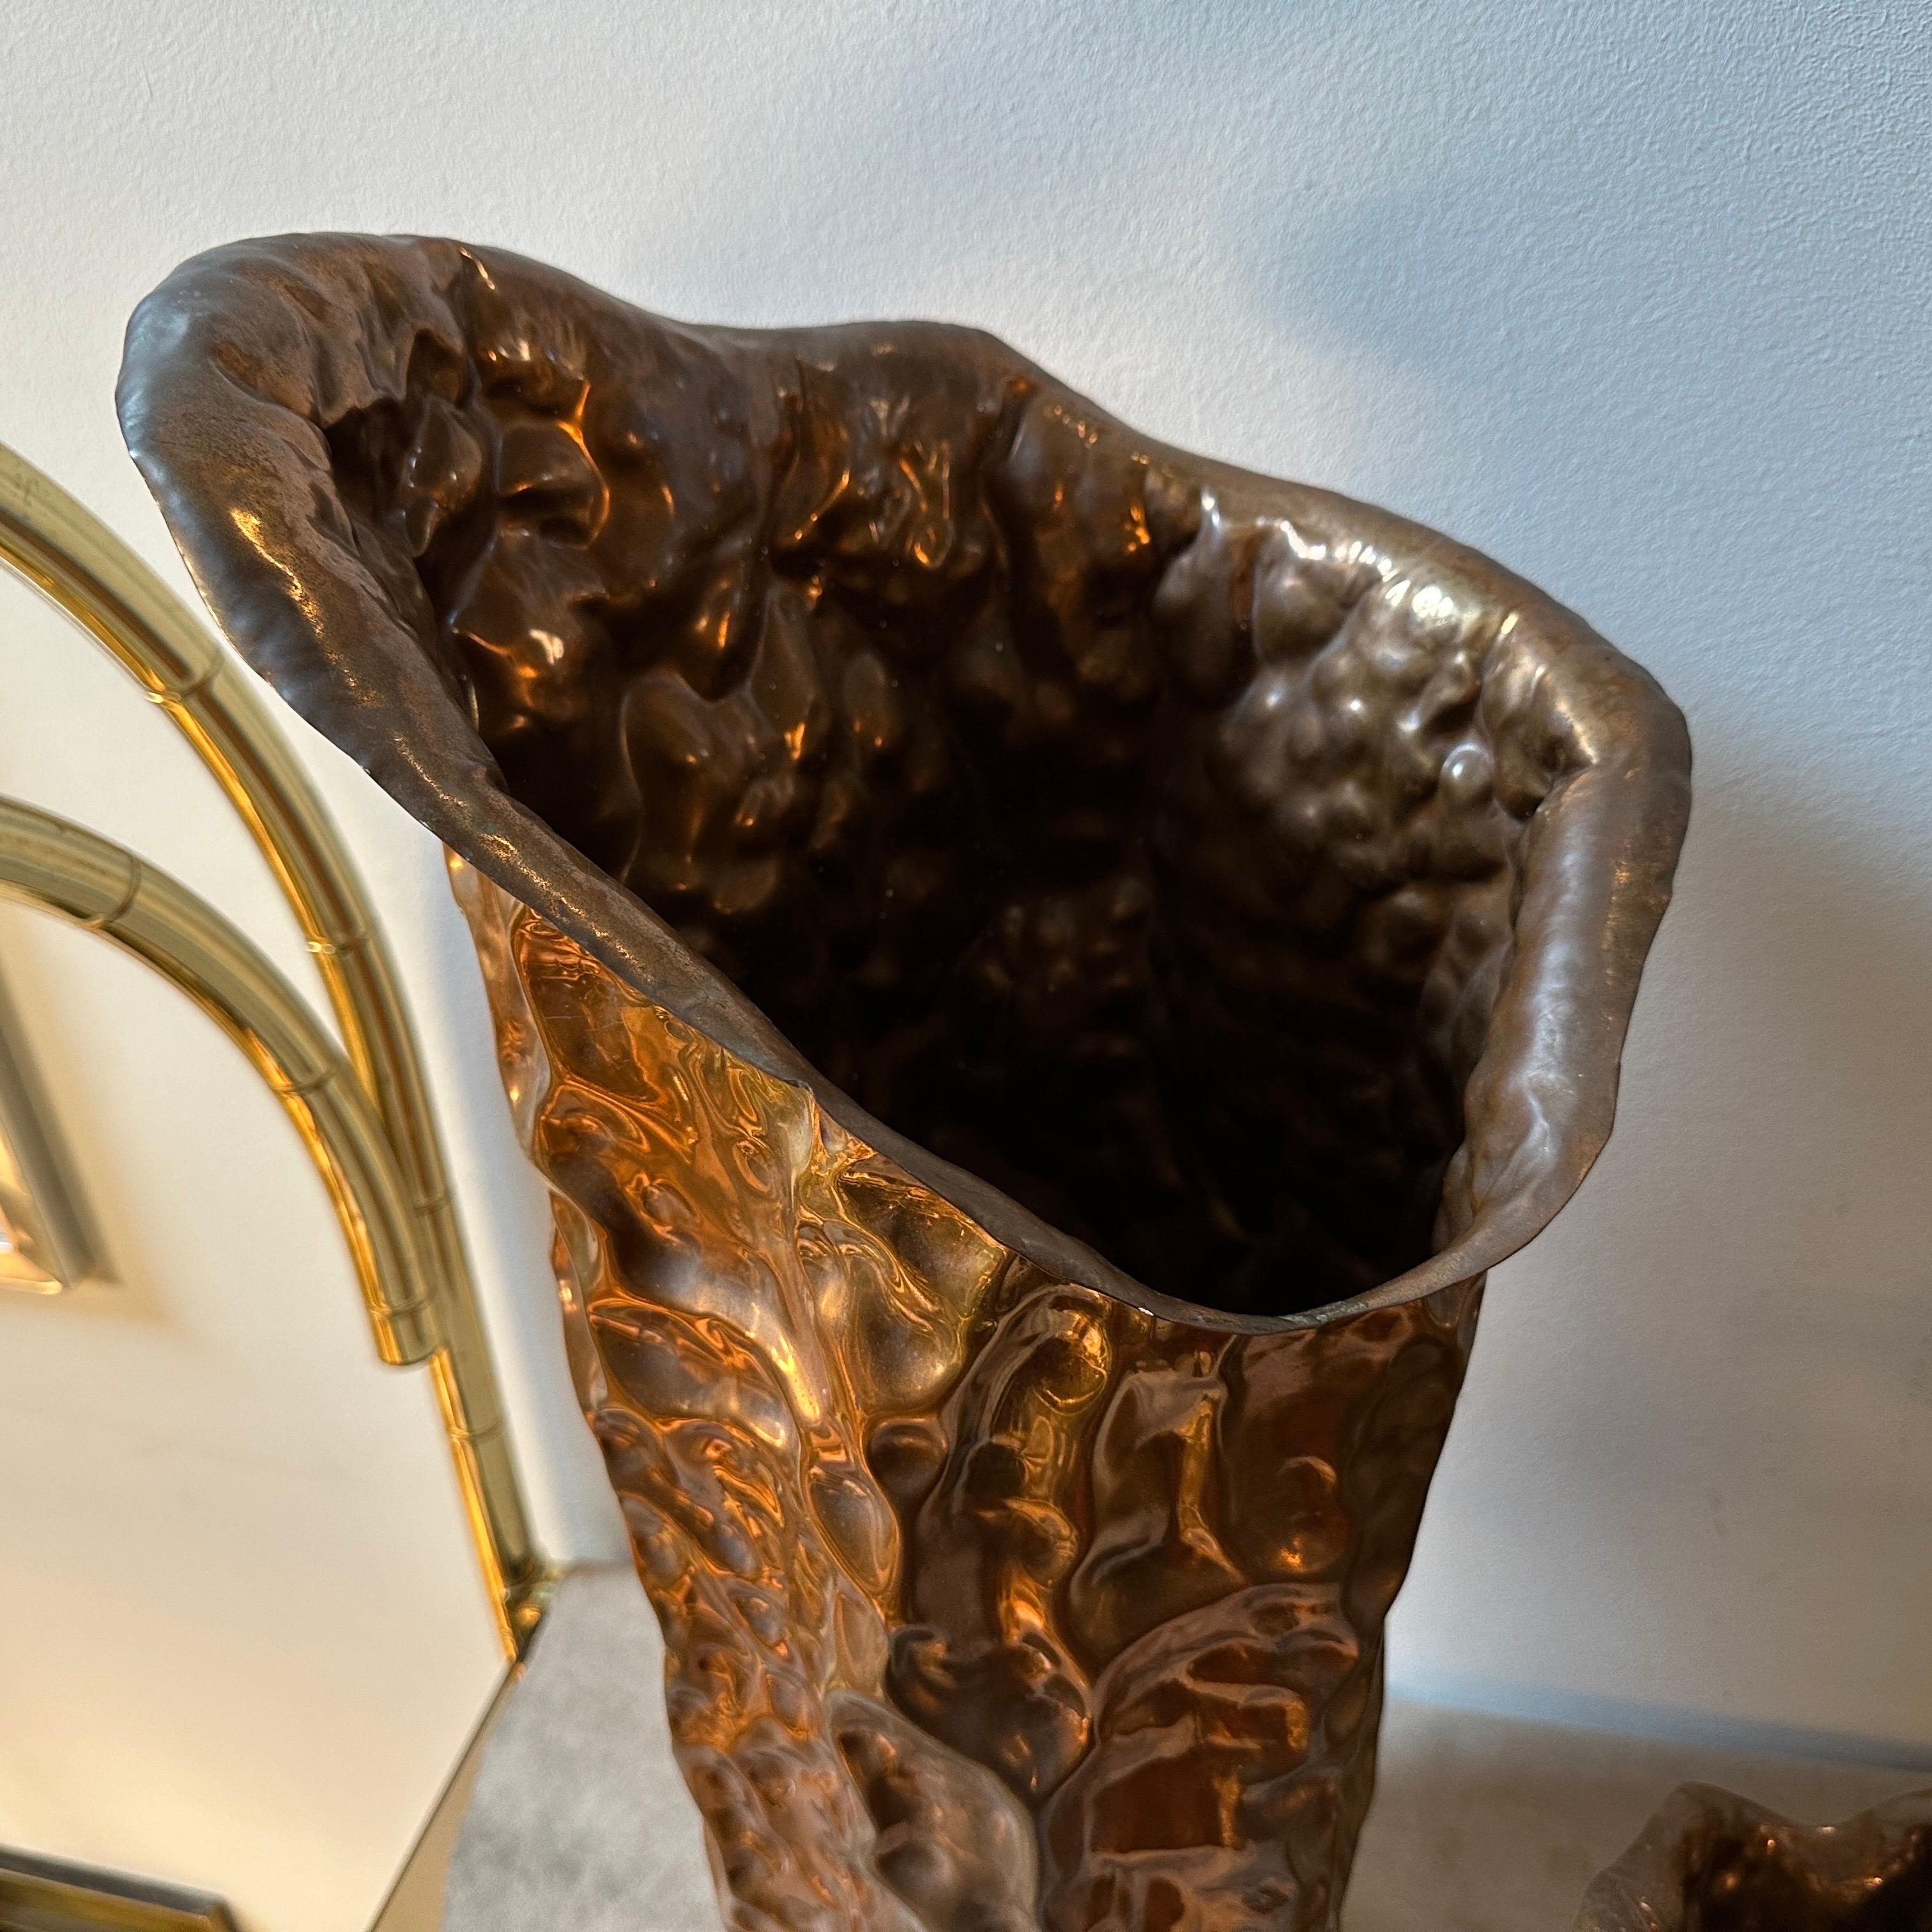 Ces vases en cuivre d'Angelo Bragalini représentent une fusion de l'expression artistique et de l'exploration des matériaux caractéristique de la période du milieu du siècle. Ils constituent des exemples intemporels de l'attrait durable du design